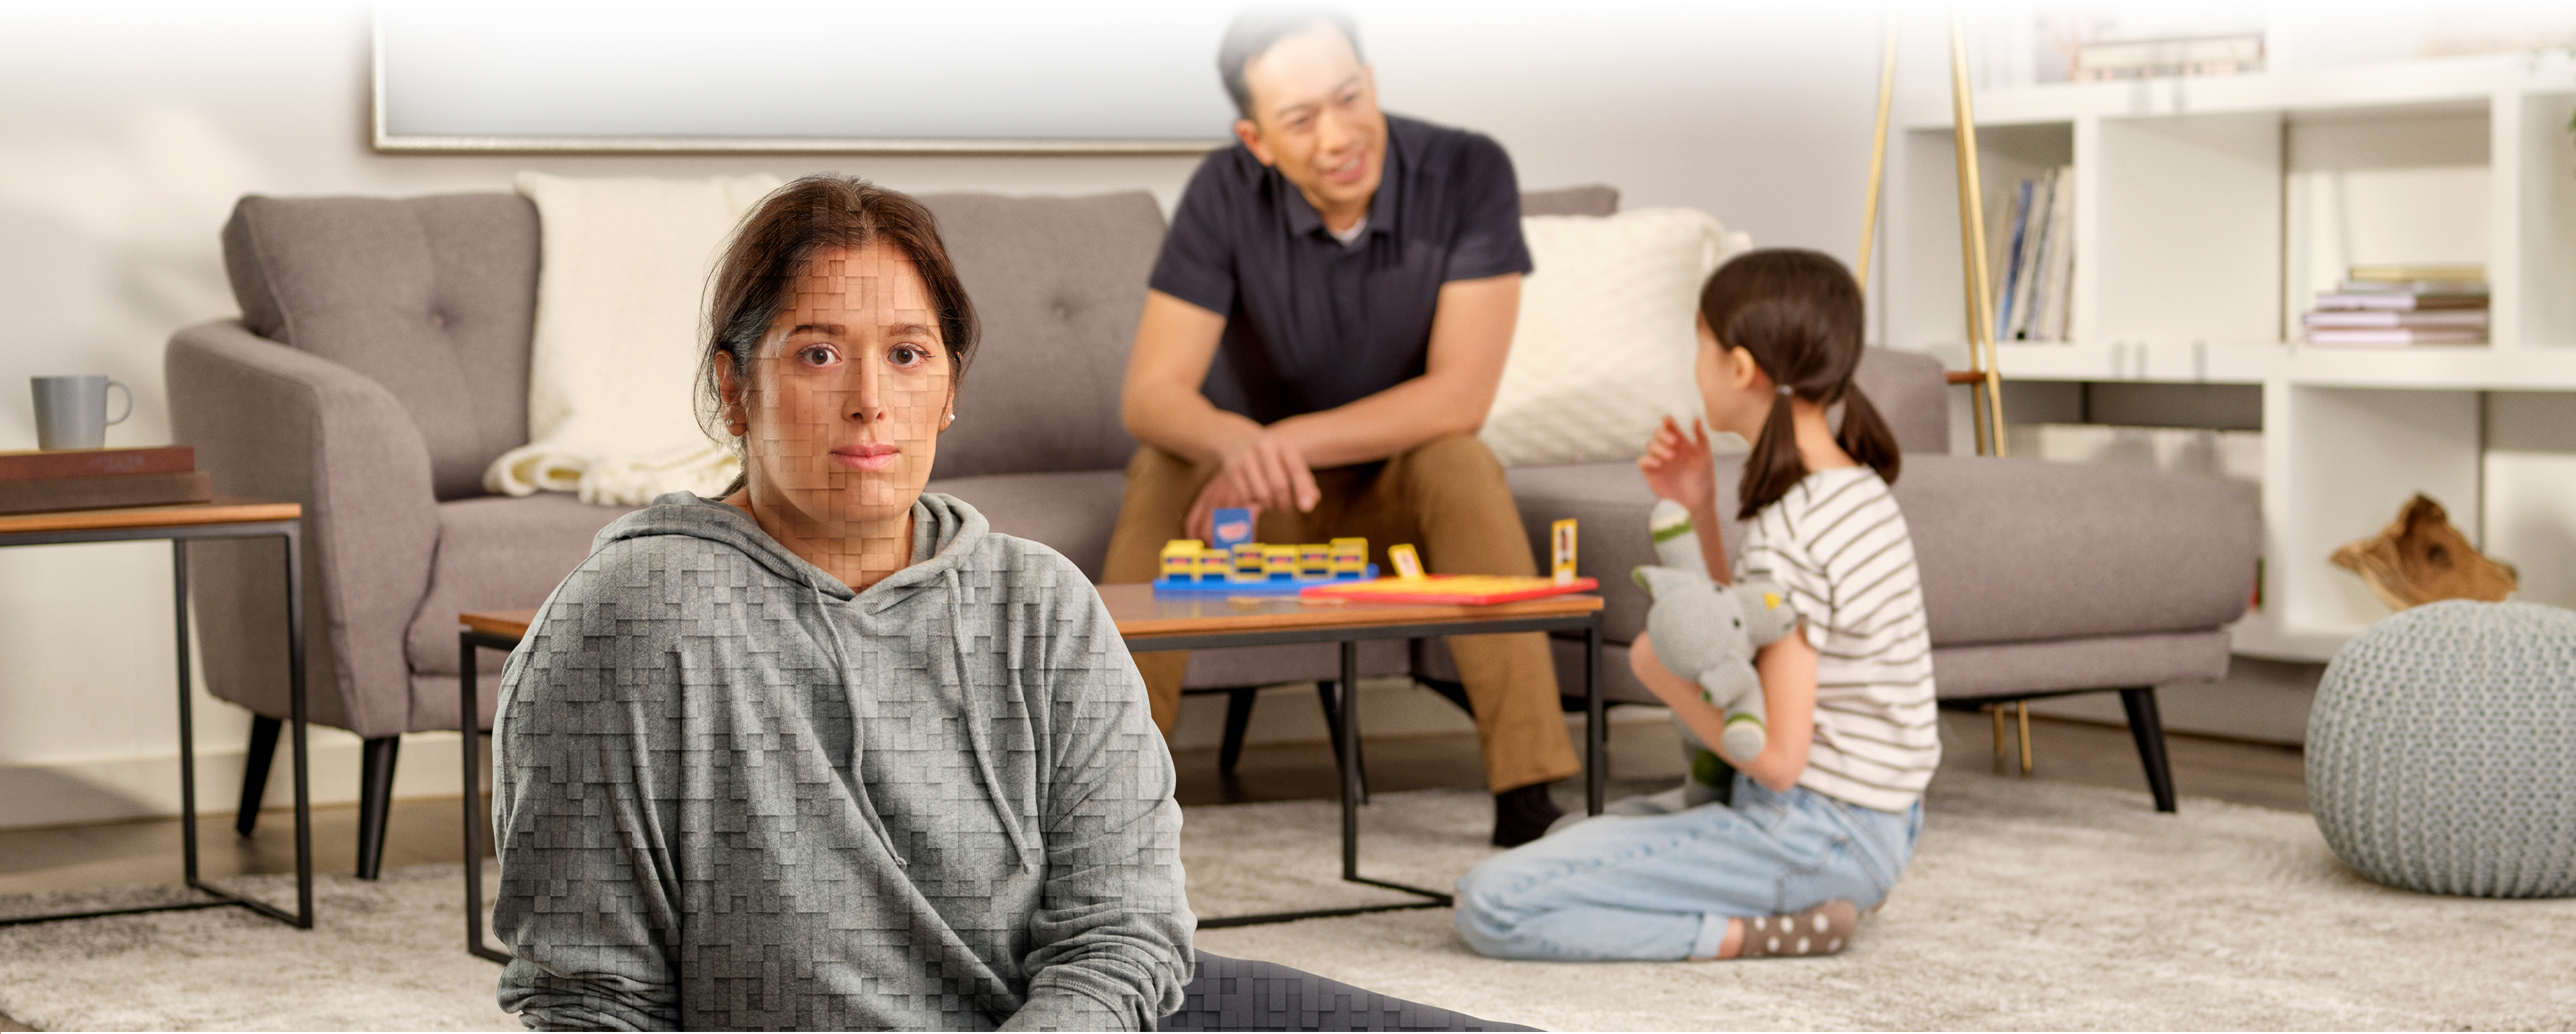 Une femme est assise par terre dans son salon avec sa famille, et la légende suivante apparaît : « Parlez à votre médecin de Trintellix ». La femme à l’avant-plan se compose de pixels tridimensionnels.